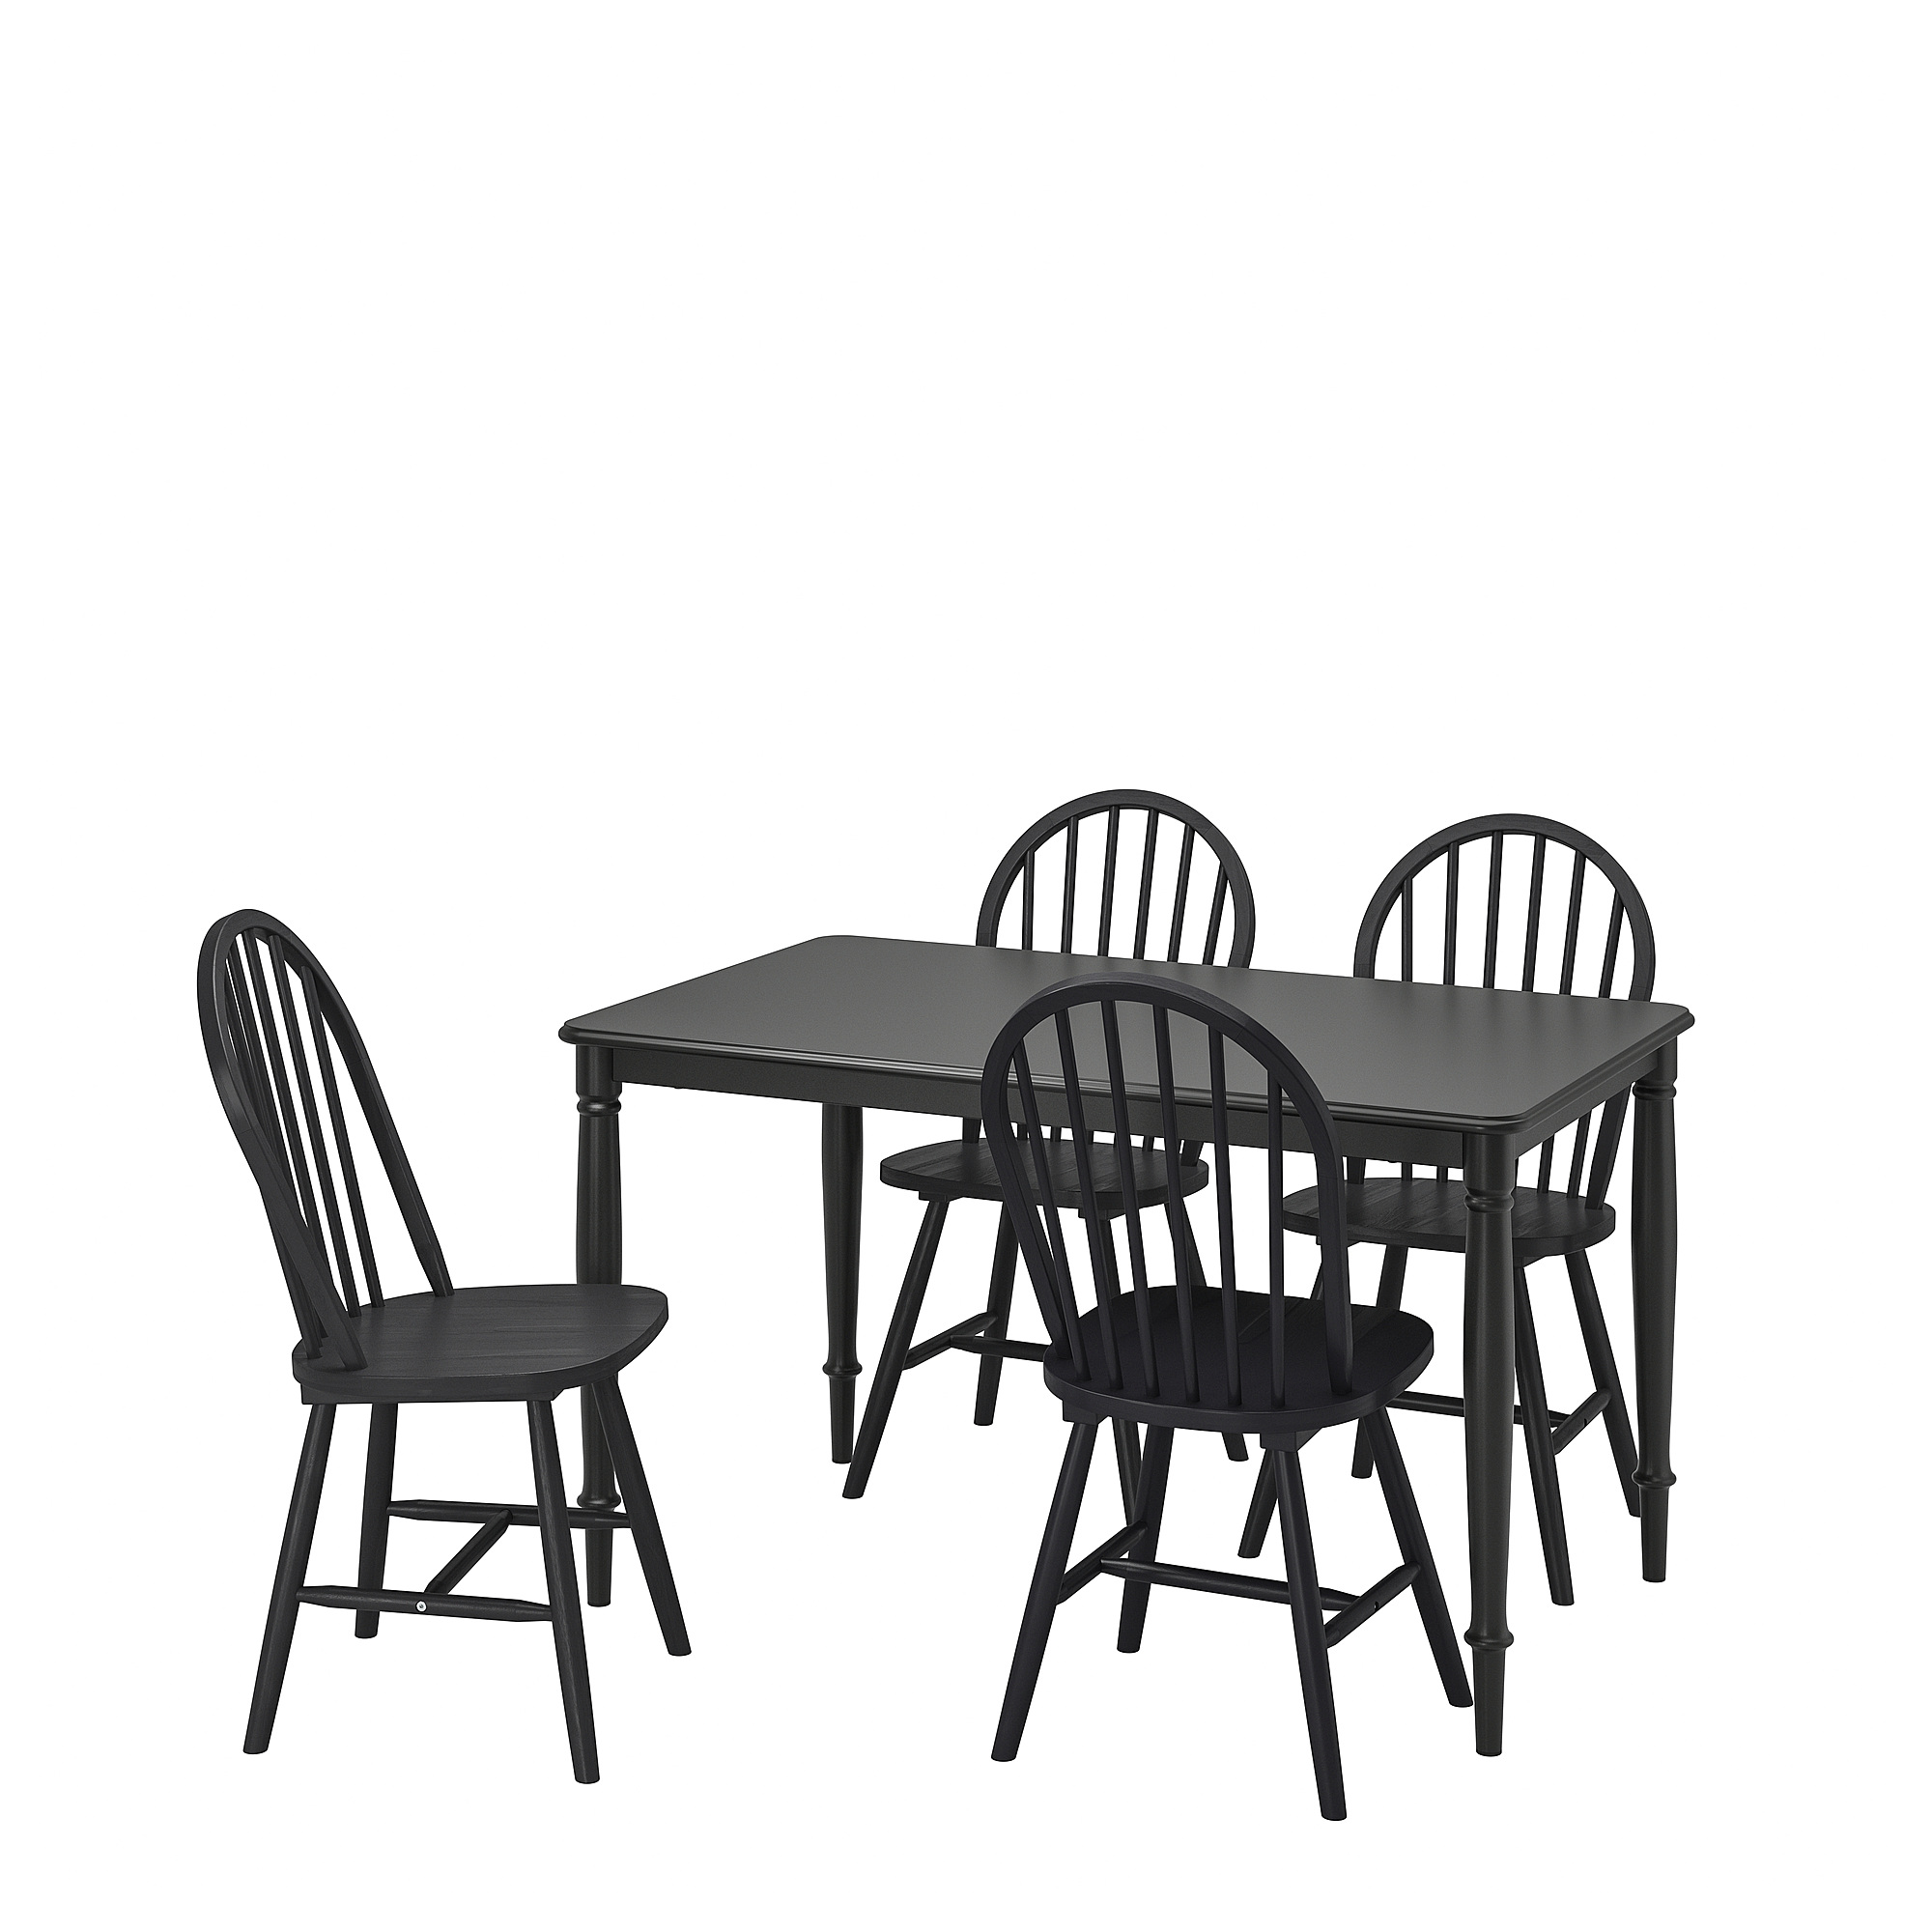 DANDERYD/SKOGSTA table and 4 chairs